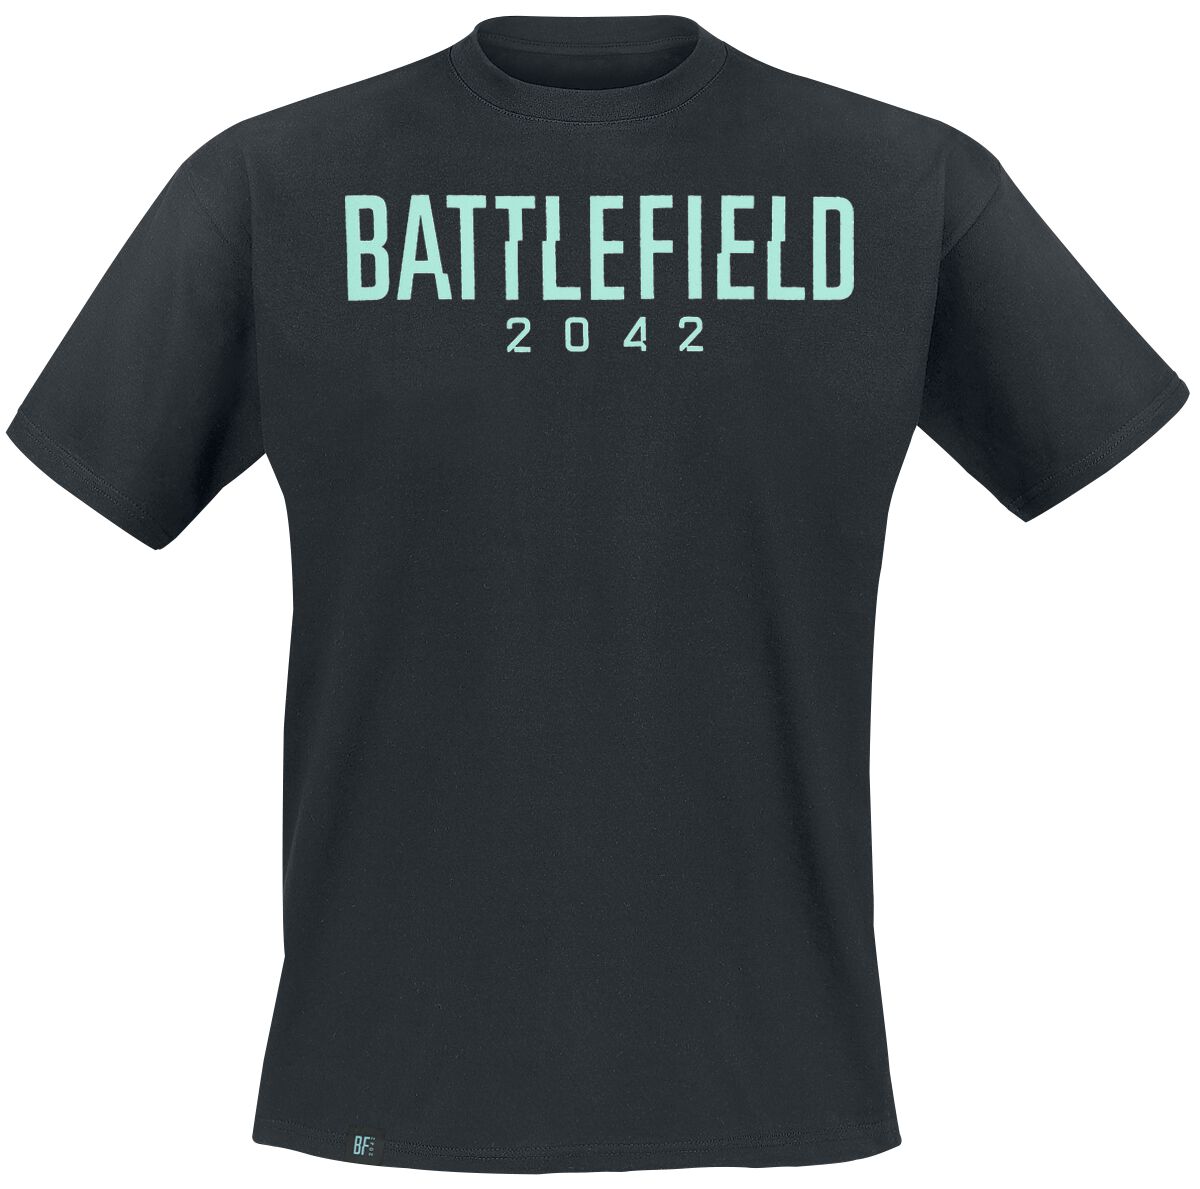 Battlefield - Gaming T-Shirt - 2042 - Logo - XS - für Männer - Größe XS - schwarz